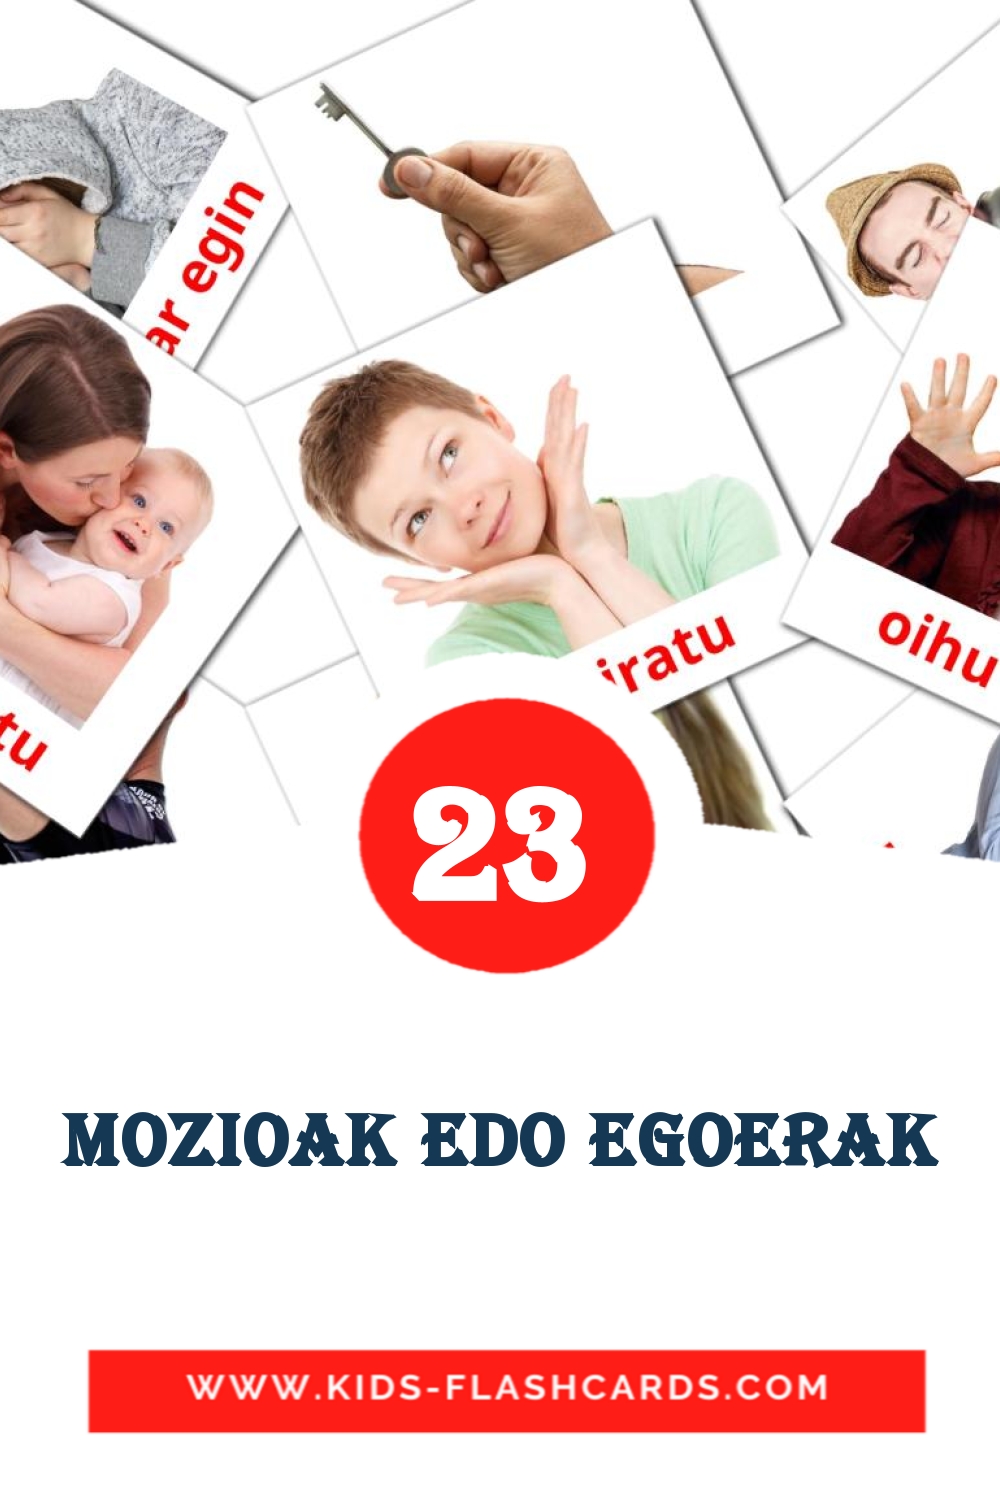 23 Cartões com Imagens de Mozioak edo egoerak para Jardim de Infância em basco